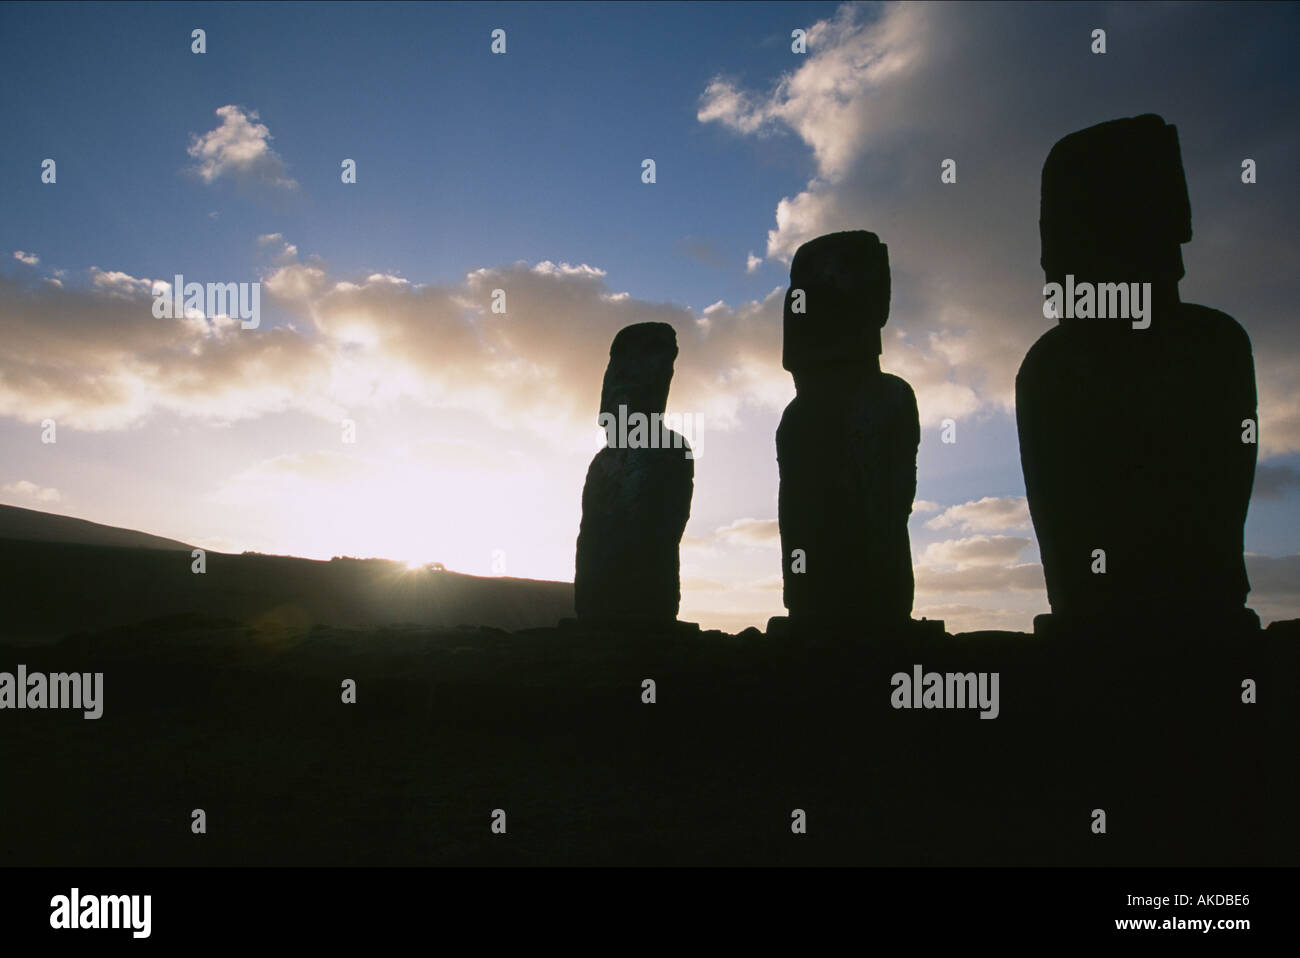 Moai Easter Island Stock Photo